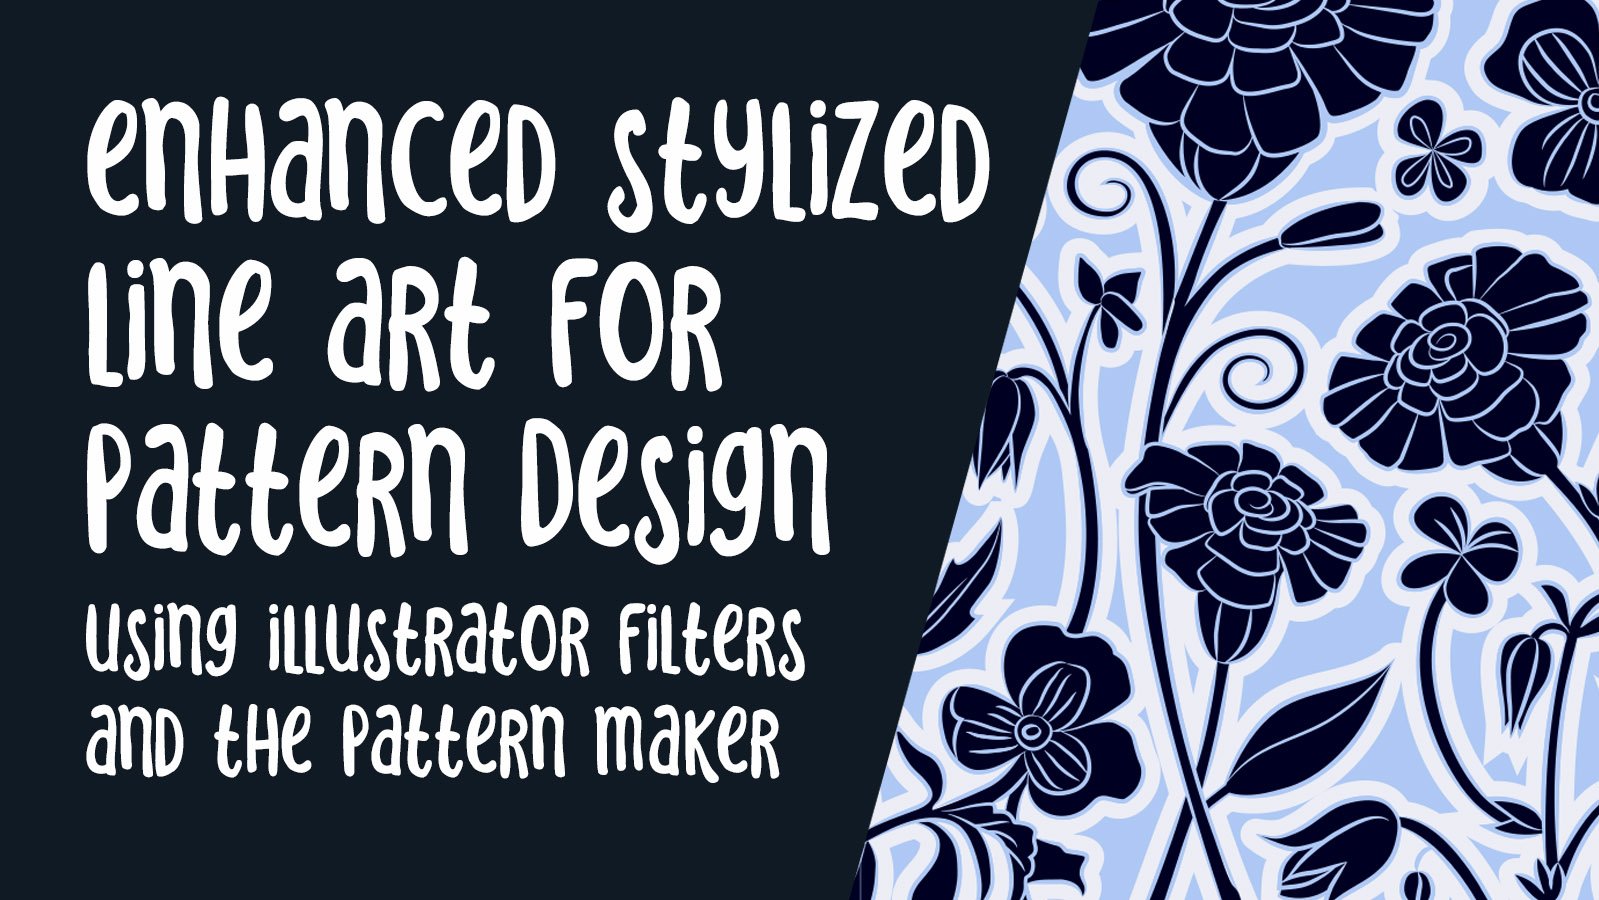 Enhanced Stylized Line Art for Pattern Design in Adobe Illustrator Using the Offset Filter